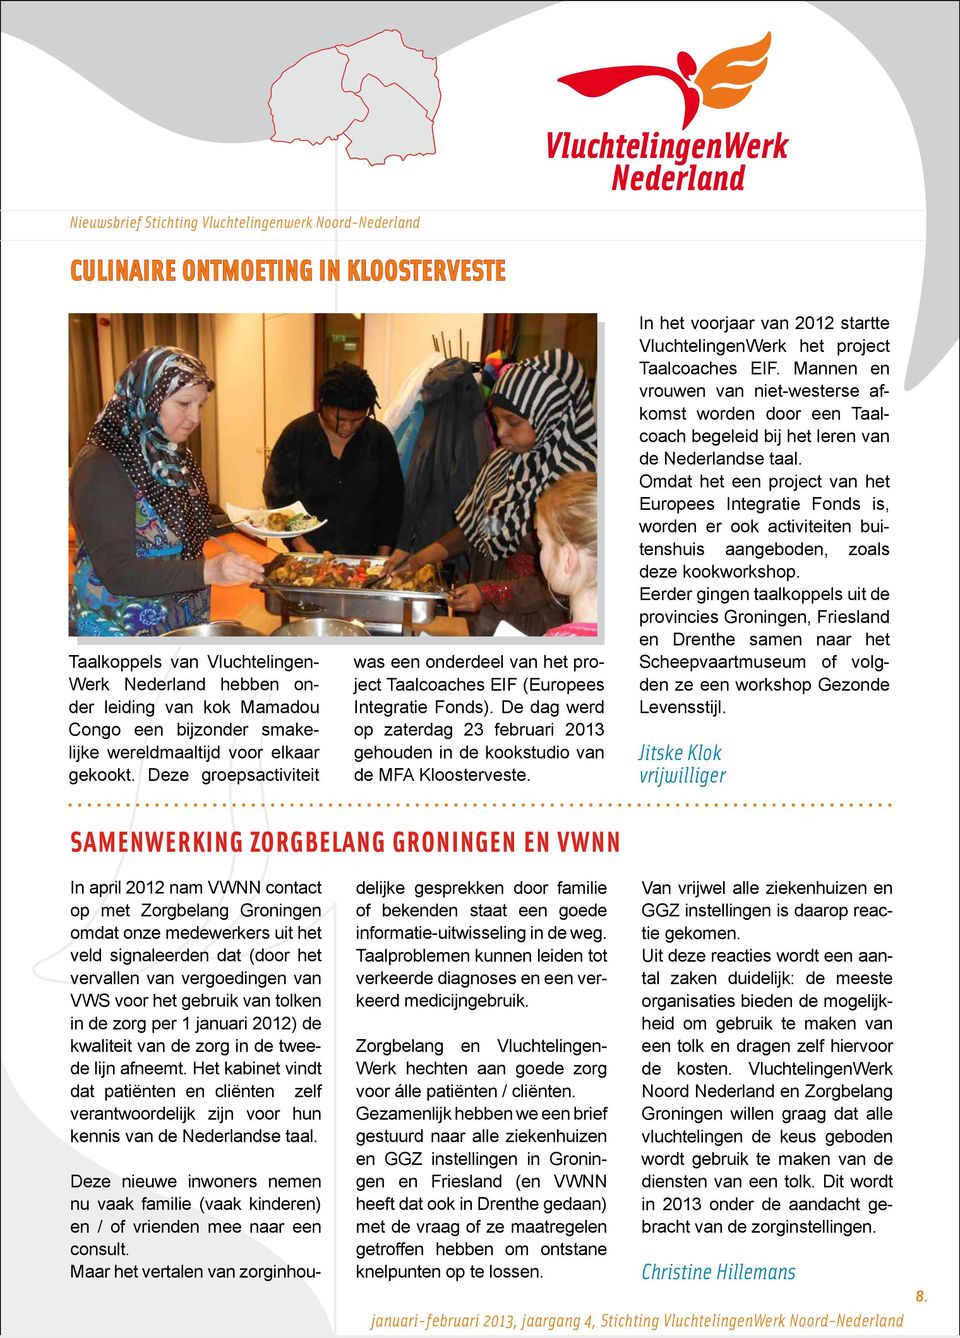 In het voorjaar van 2012 startte VluchtelingenWerk het project Taalcoaches EIF. Mannen en vrouwen van niet-westerse afkomst worden door een Taalcoach begeleid bij het leren van de Nederlandse taal.